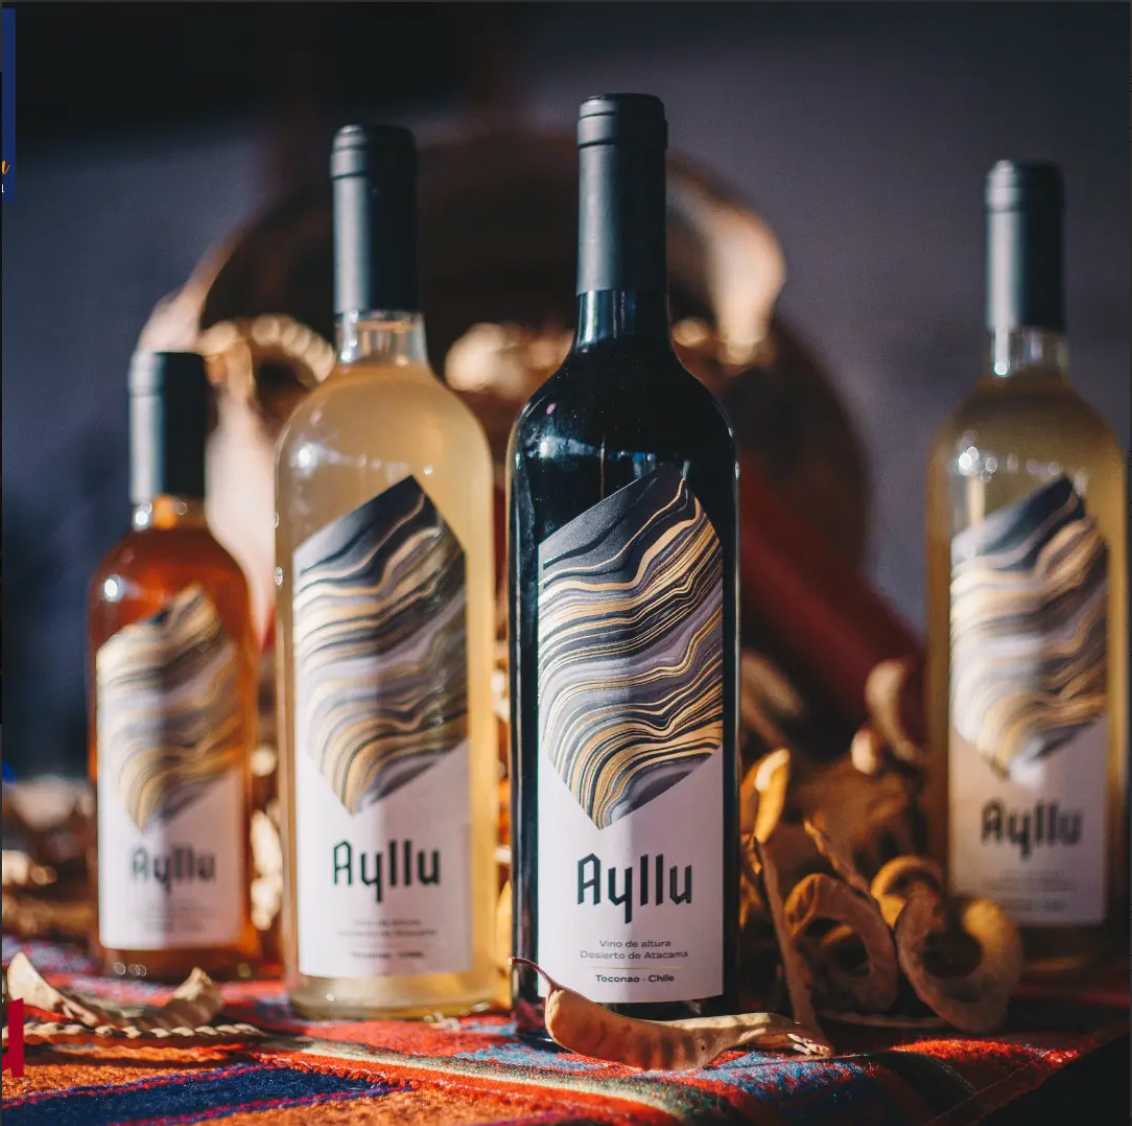 vinos ayllu en chileanwines - buenos vinos de selección vinos chilenos vinos del desierto de chile atacama